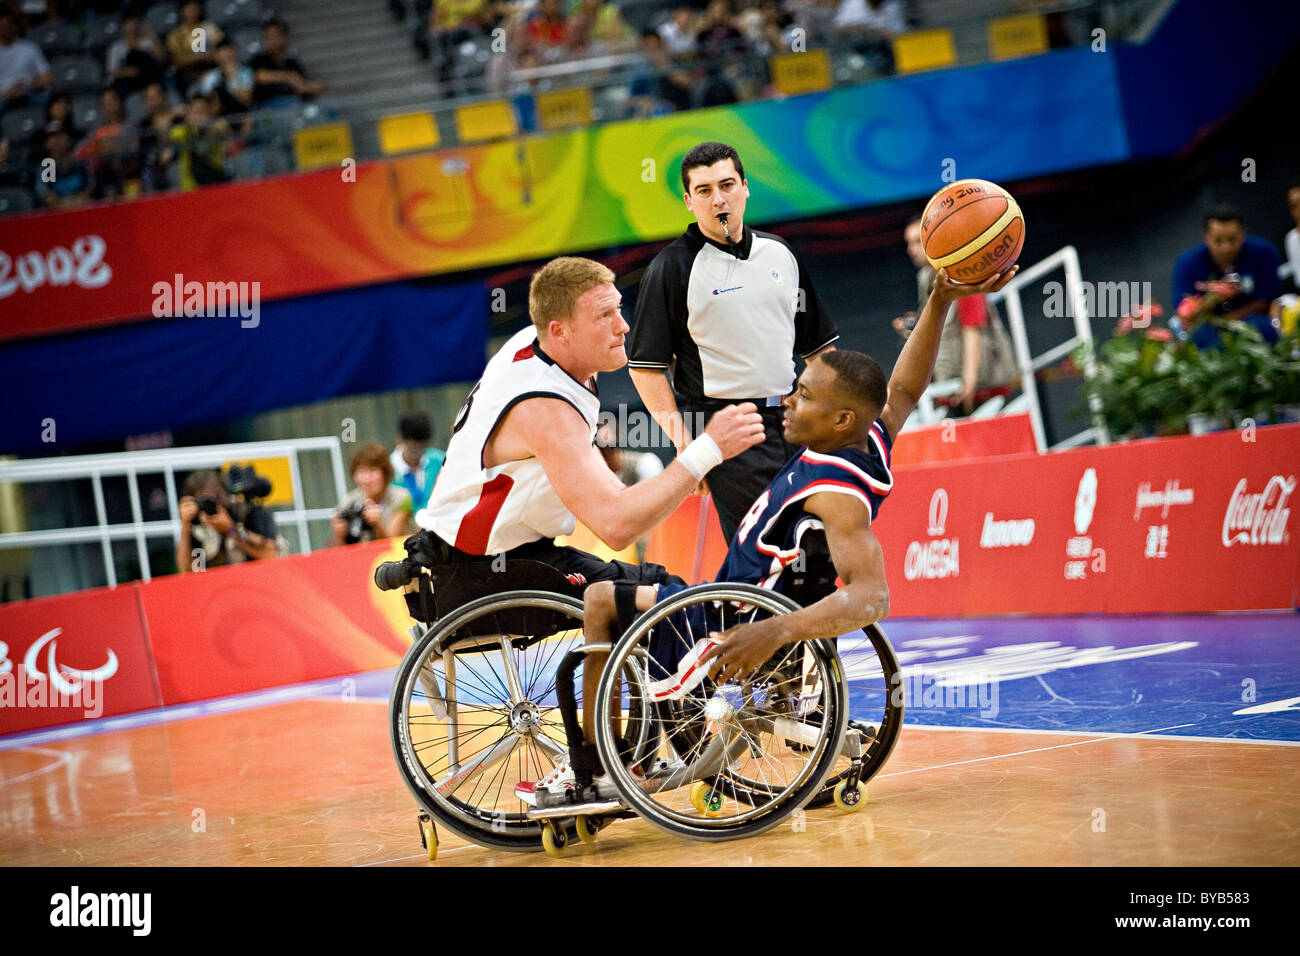 Eric Barbier de l'USA a l'air d'un laissez-passer sous la pression de Patrick Anderson lors des Jeux Paralympiques de Beijing 2008 Banque D'Images